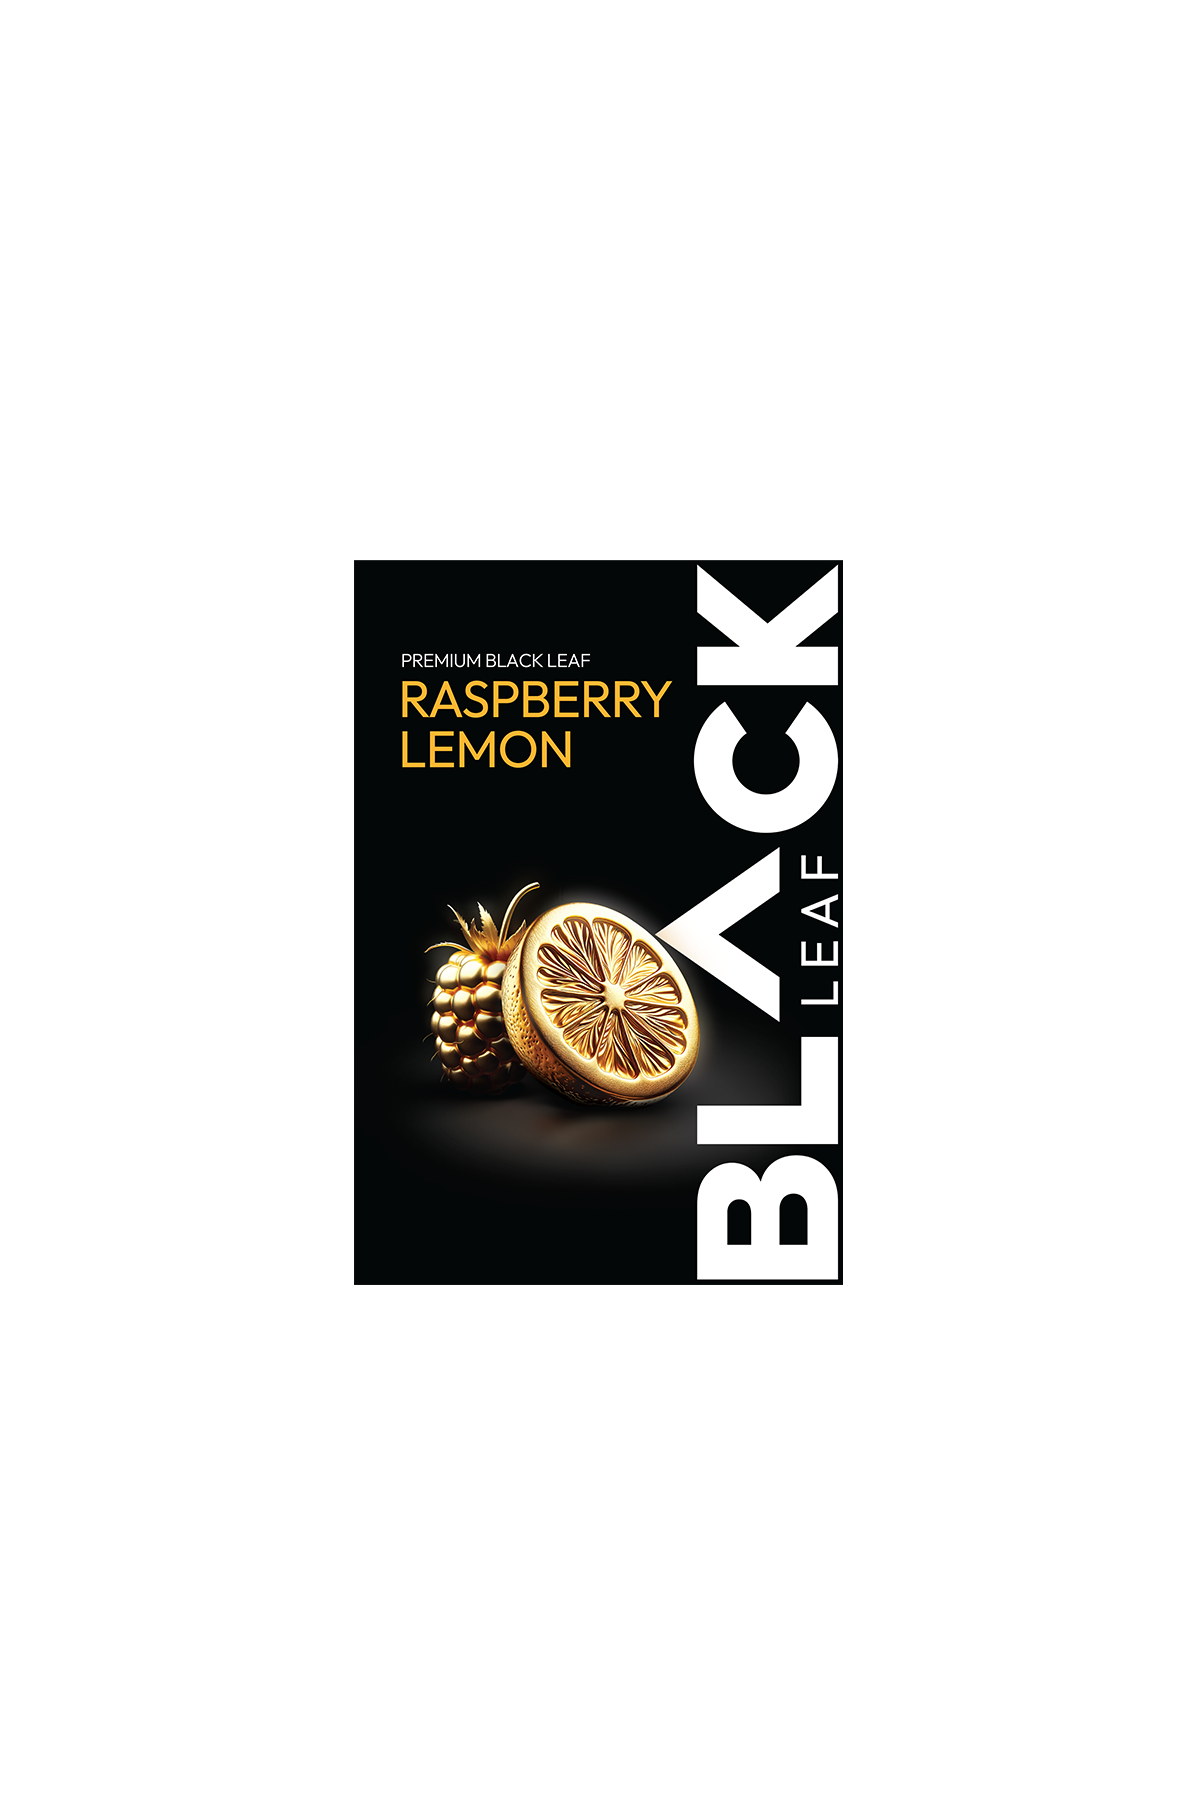 Tabák - BLACK Leaf 200g - Raspberi Lmn